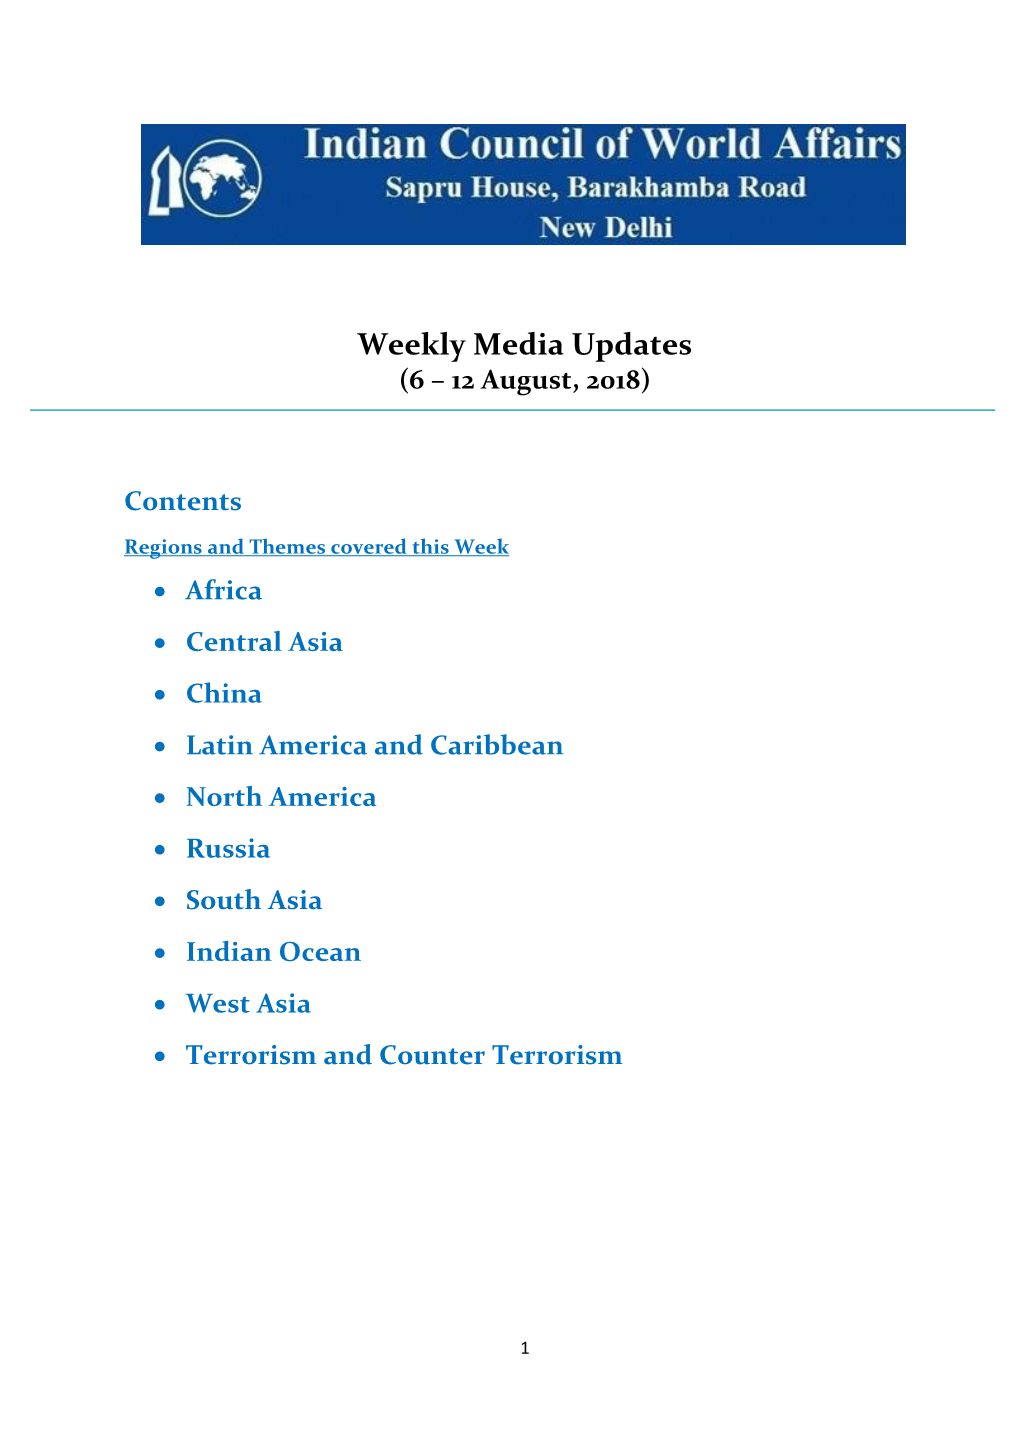 Weekly Media Updates (6 – 12 August, 2018)